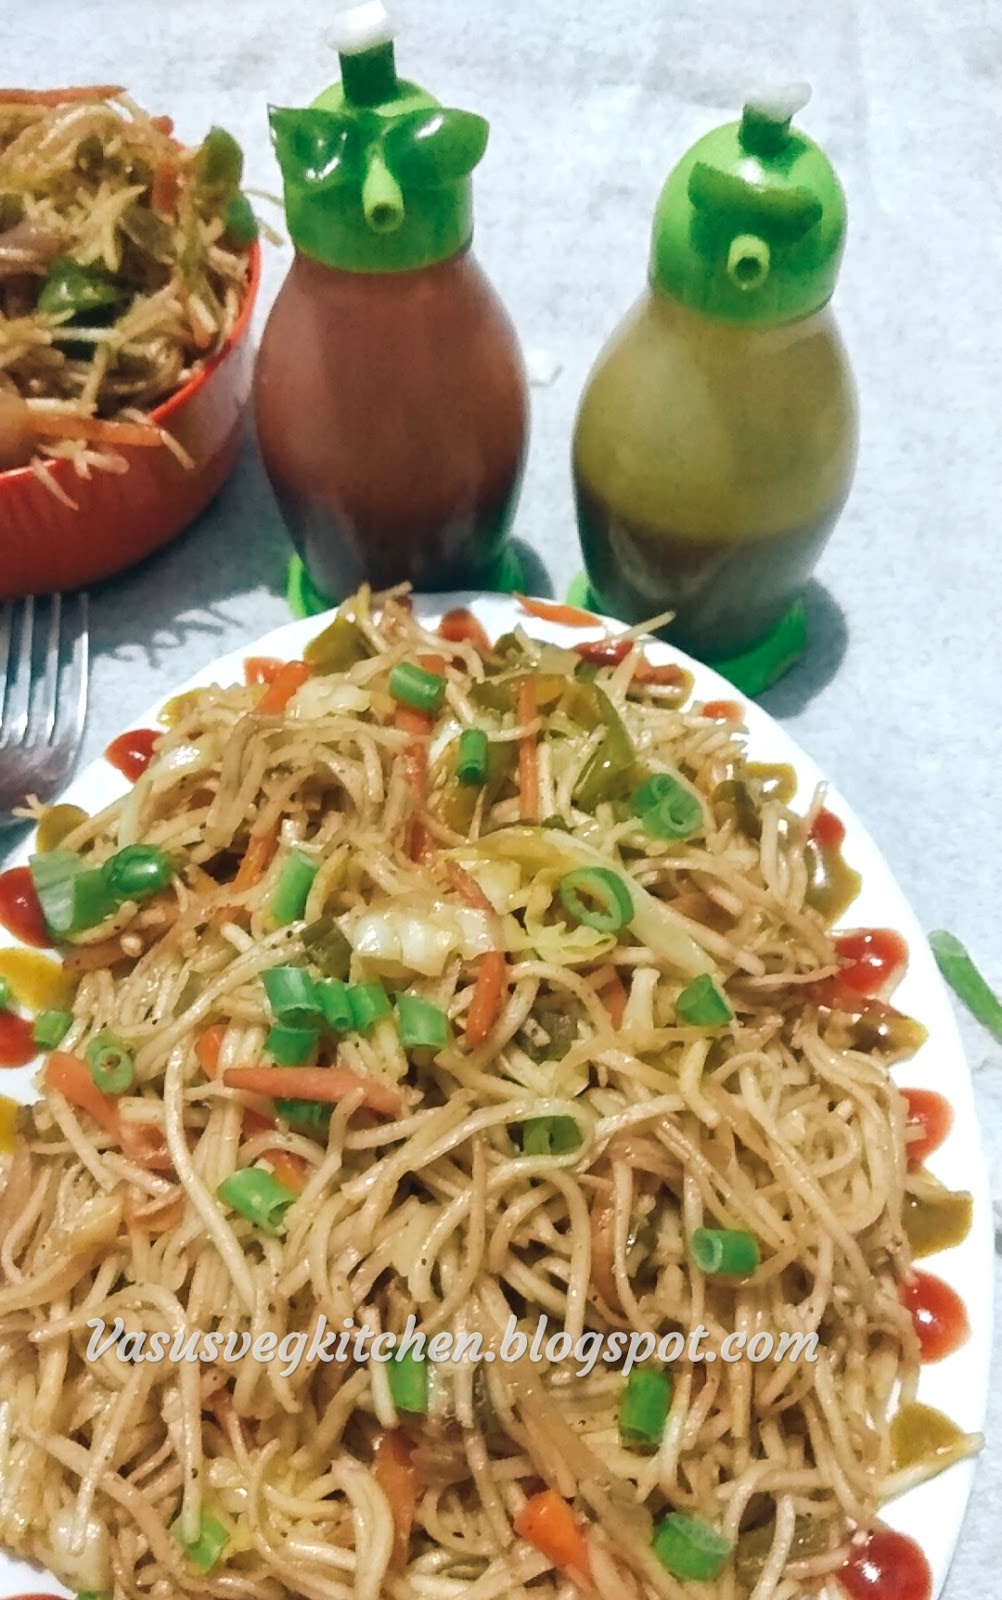 Vasusvegkitchen: Veg chow mein, veg chow mein noodles, how to prepare ...